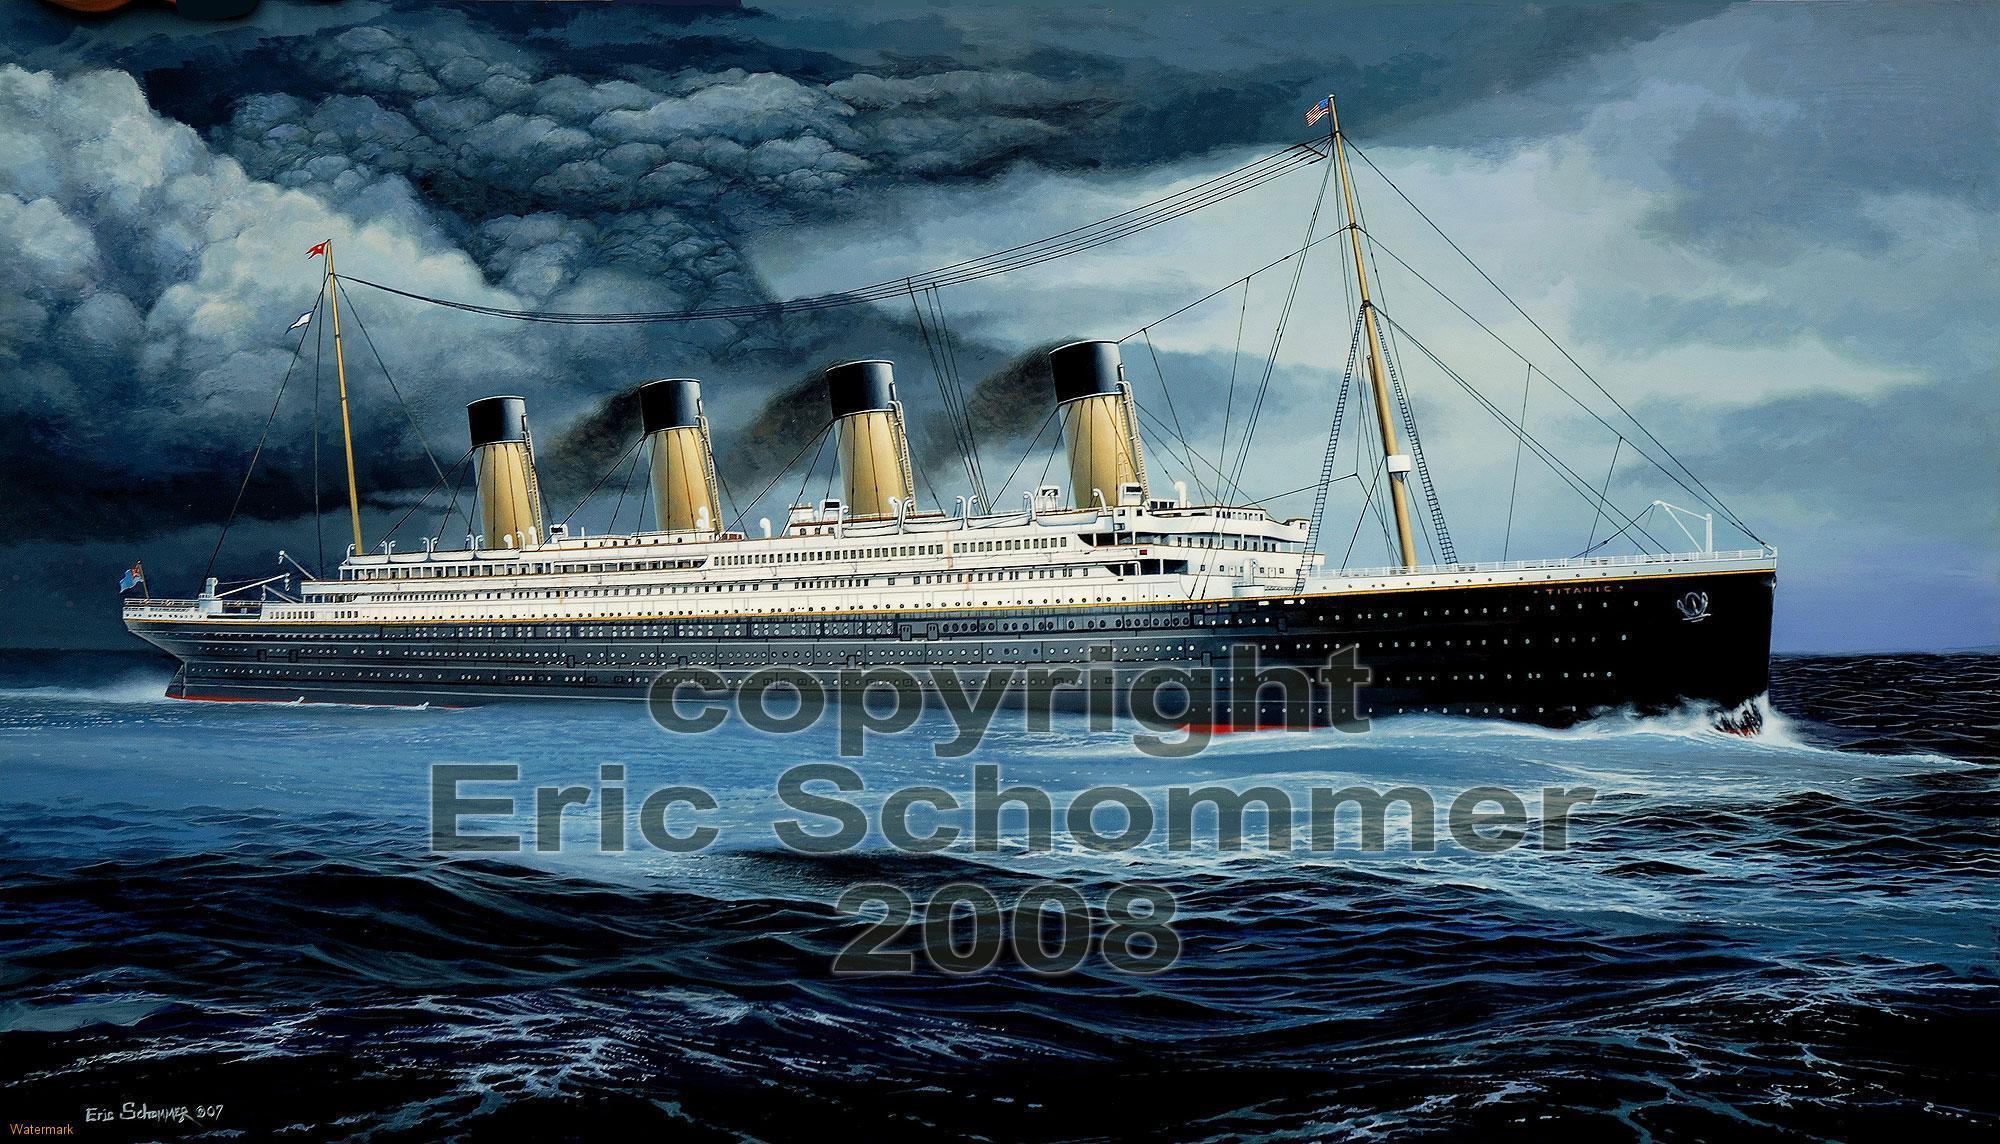 Wallpapers Of Titanic Ship Wallpaper Cave HD Wallpapers Download Free Images Wallpaper [wallpaper981.blogspot.com]